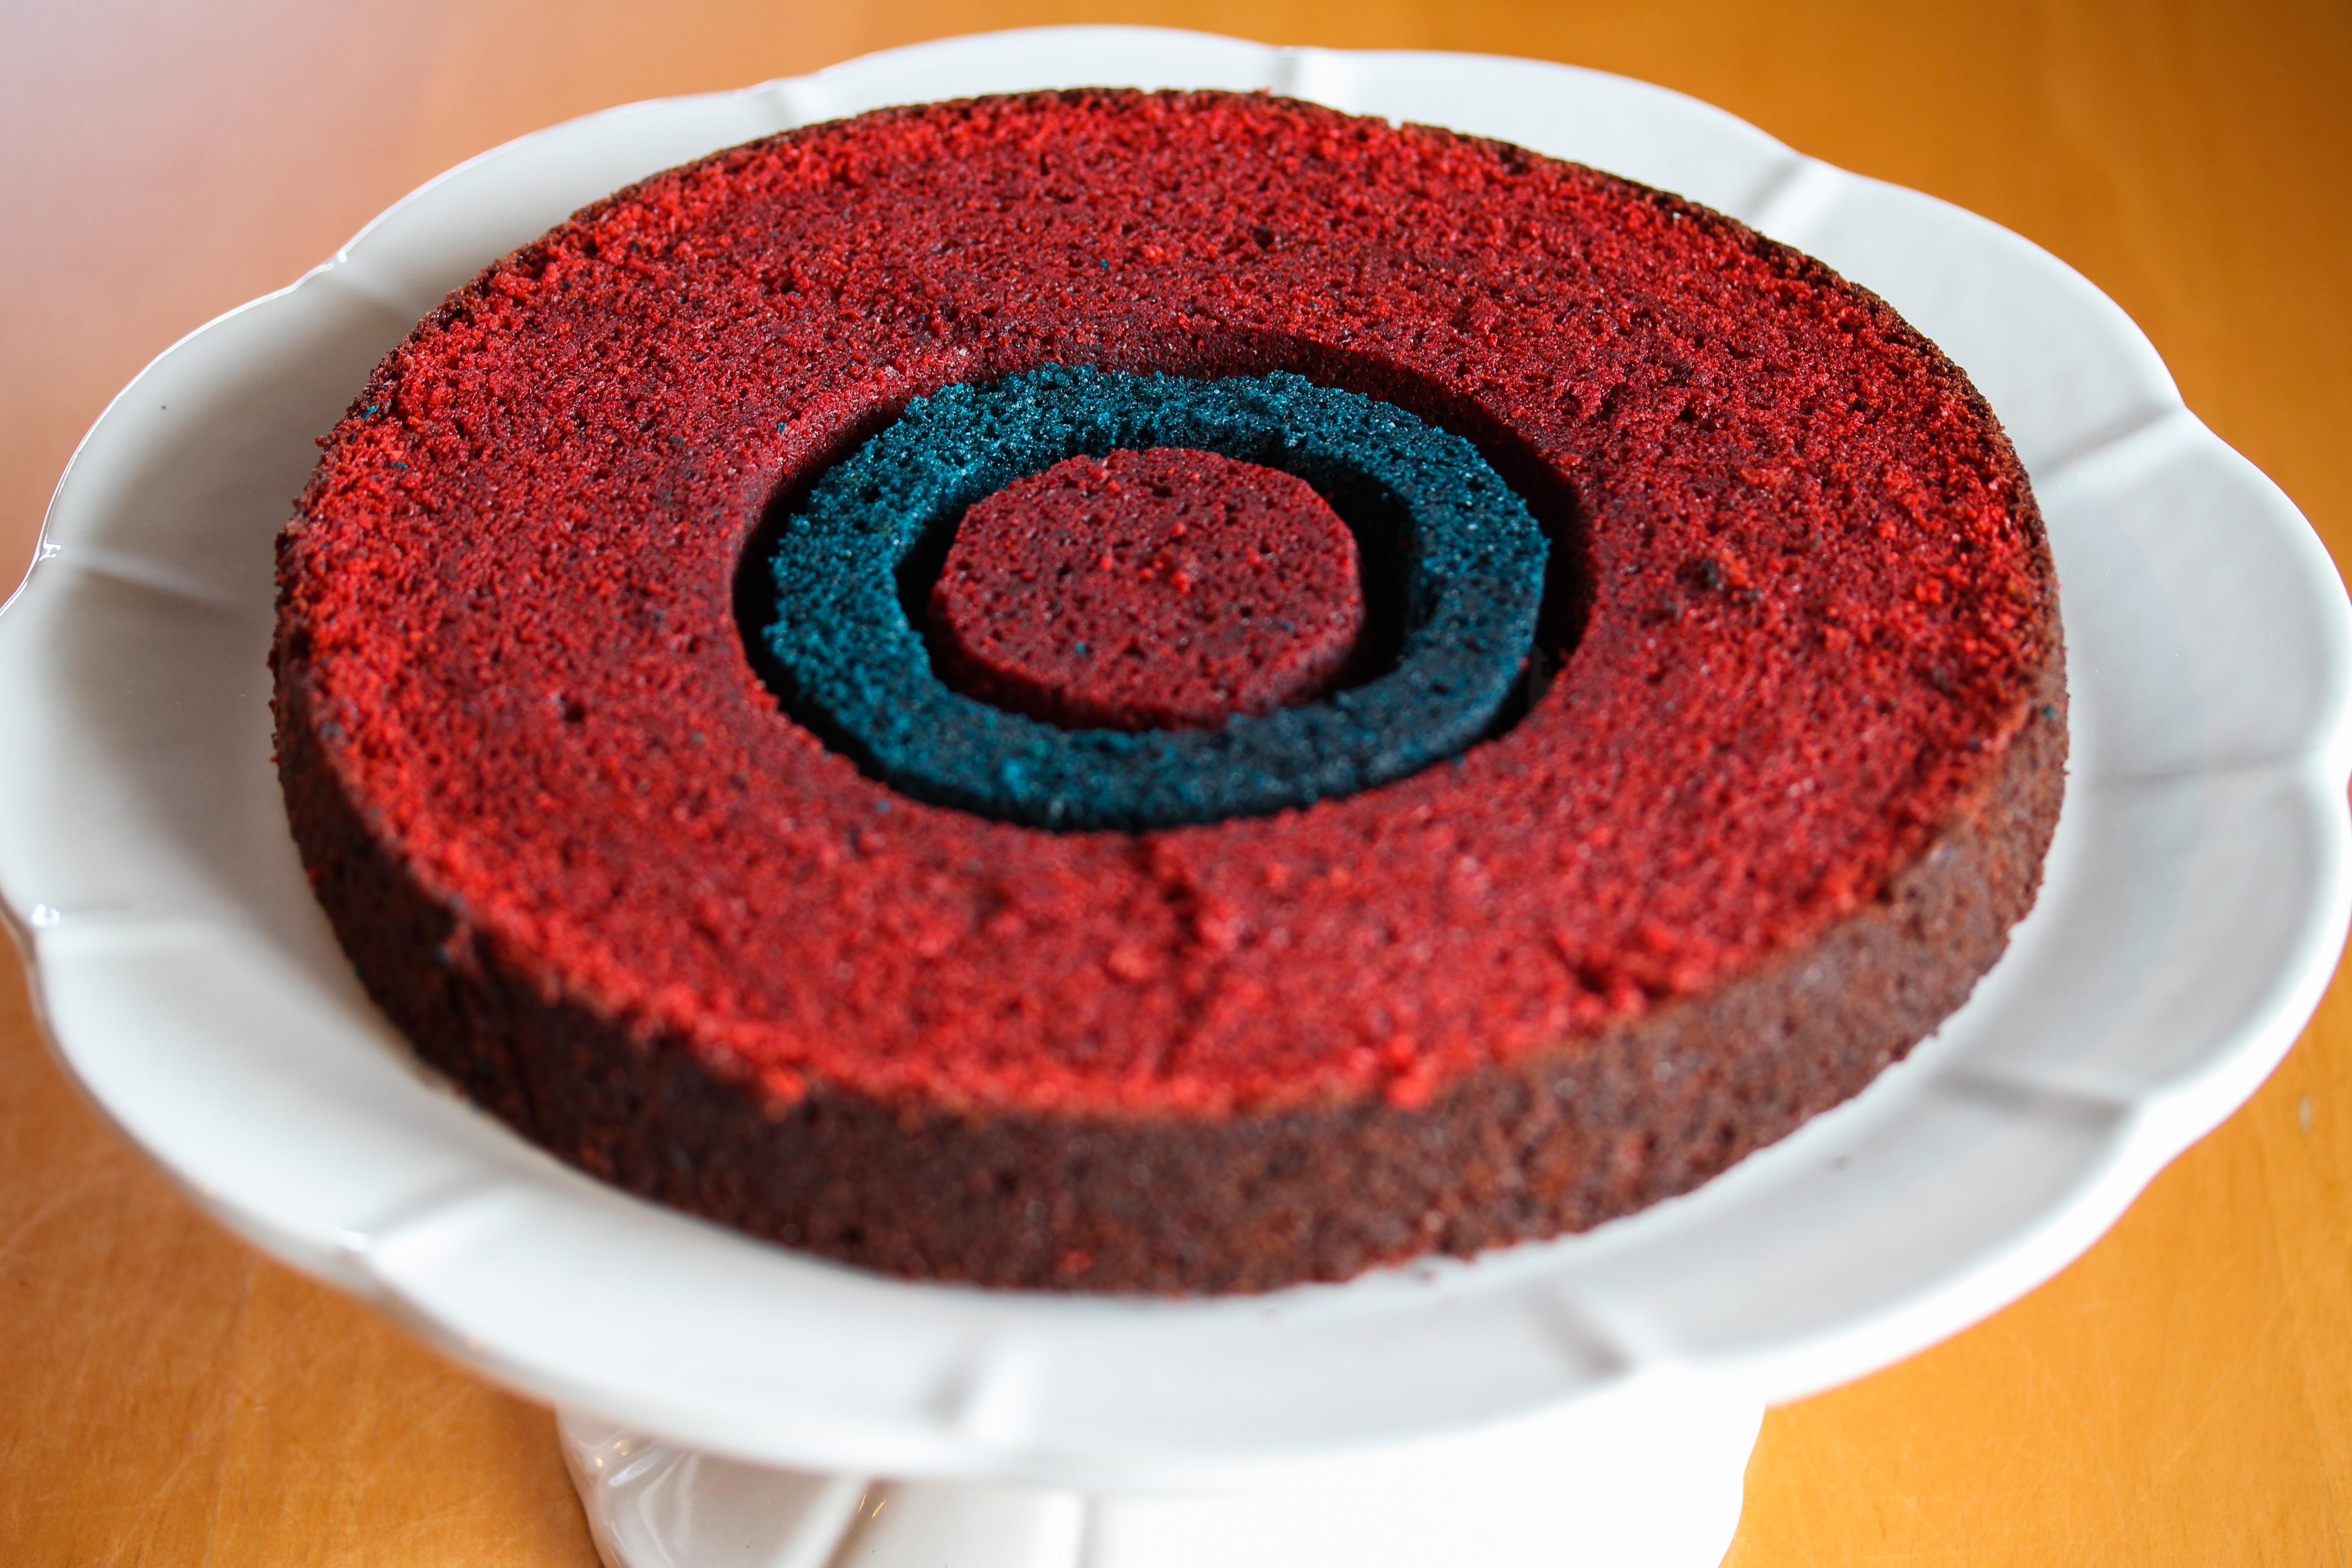 Legg en liten rød kake på 6 cm, en blå kakering på 10 cm og deretter en stor, rød kakering på et kakefat.